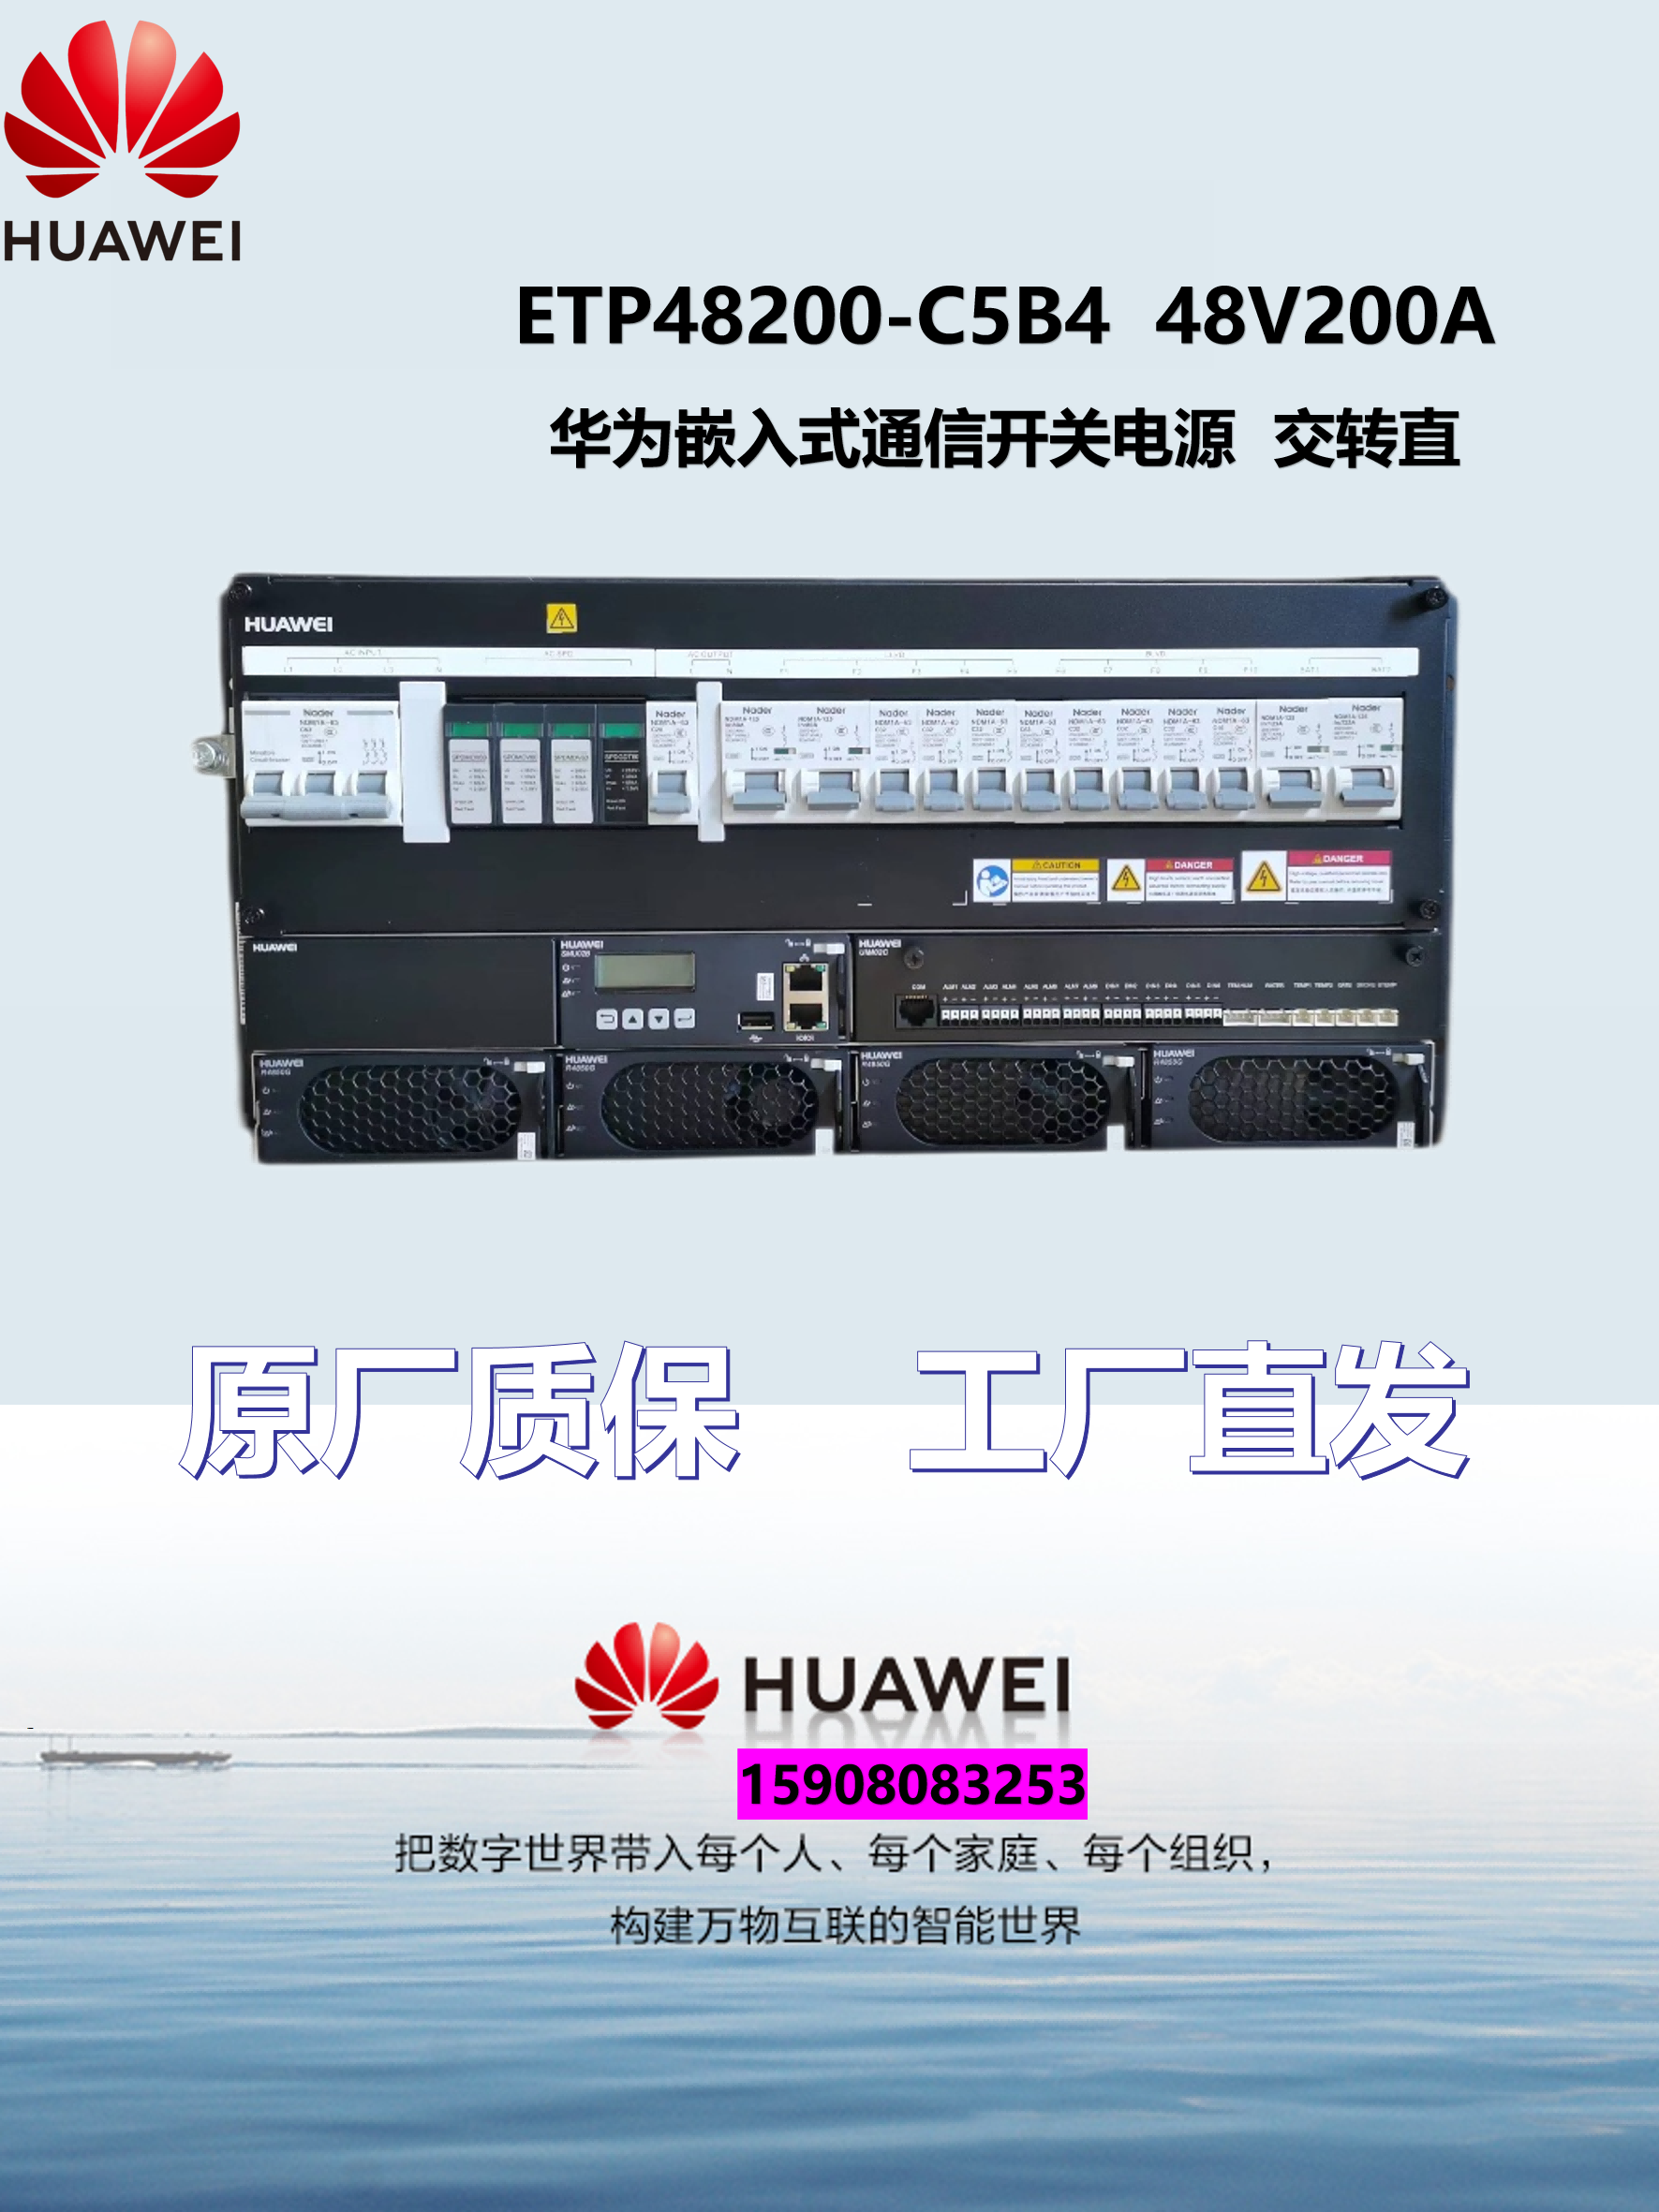 华为嵌入式电源ETP48200-C5B4交转直电源系统-48V200A通信5G基站